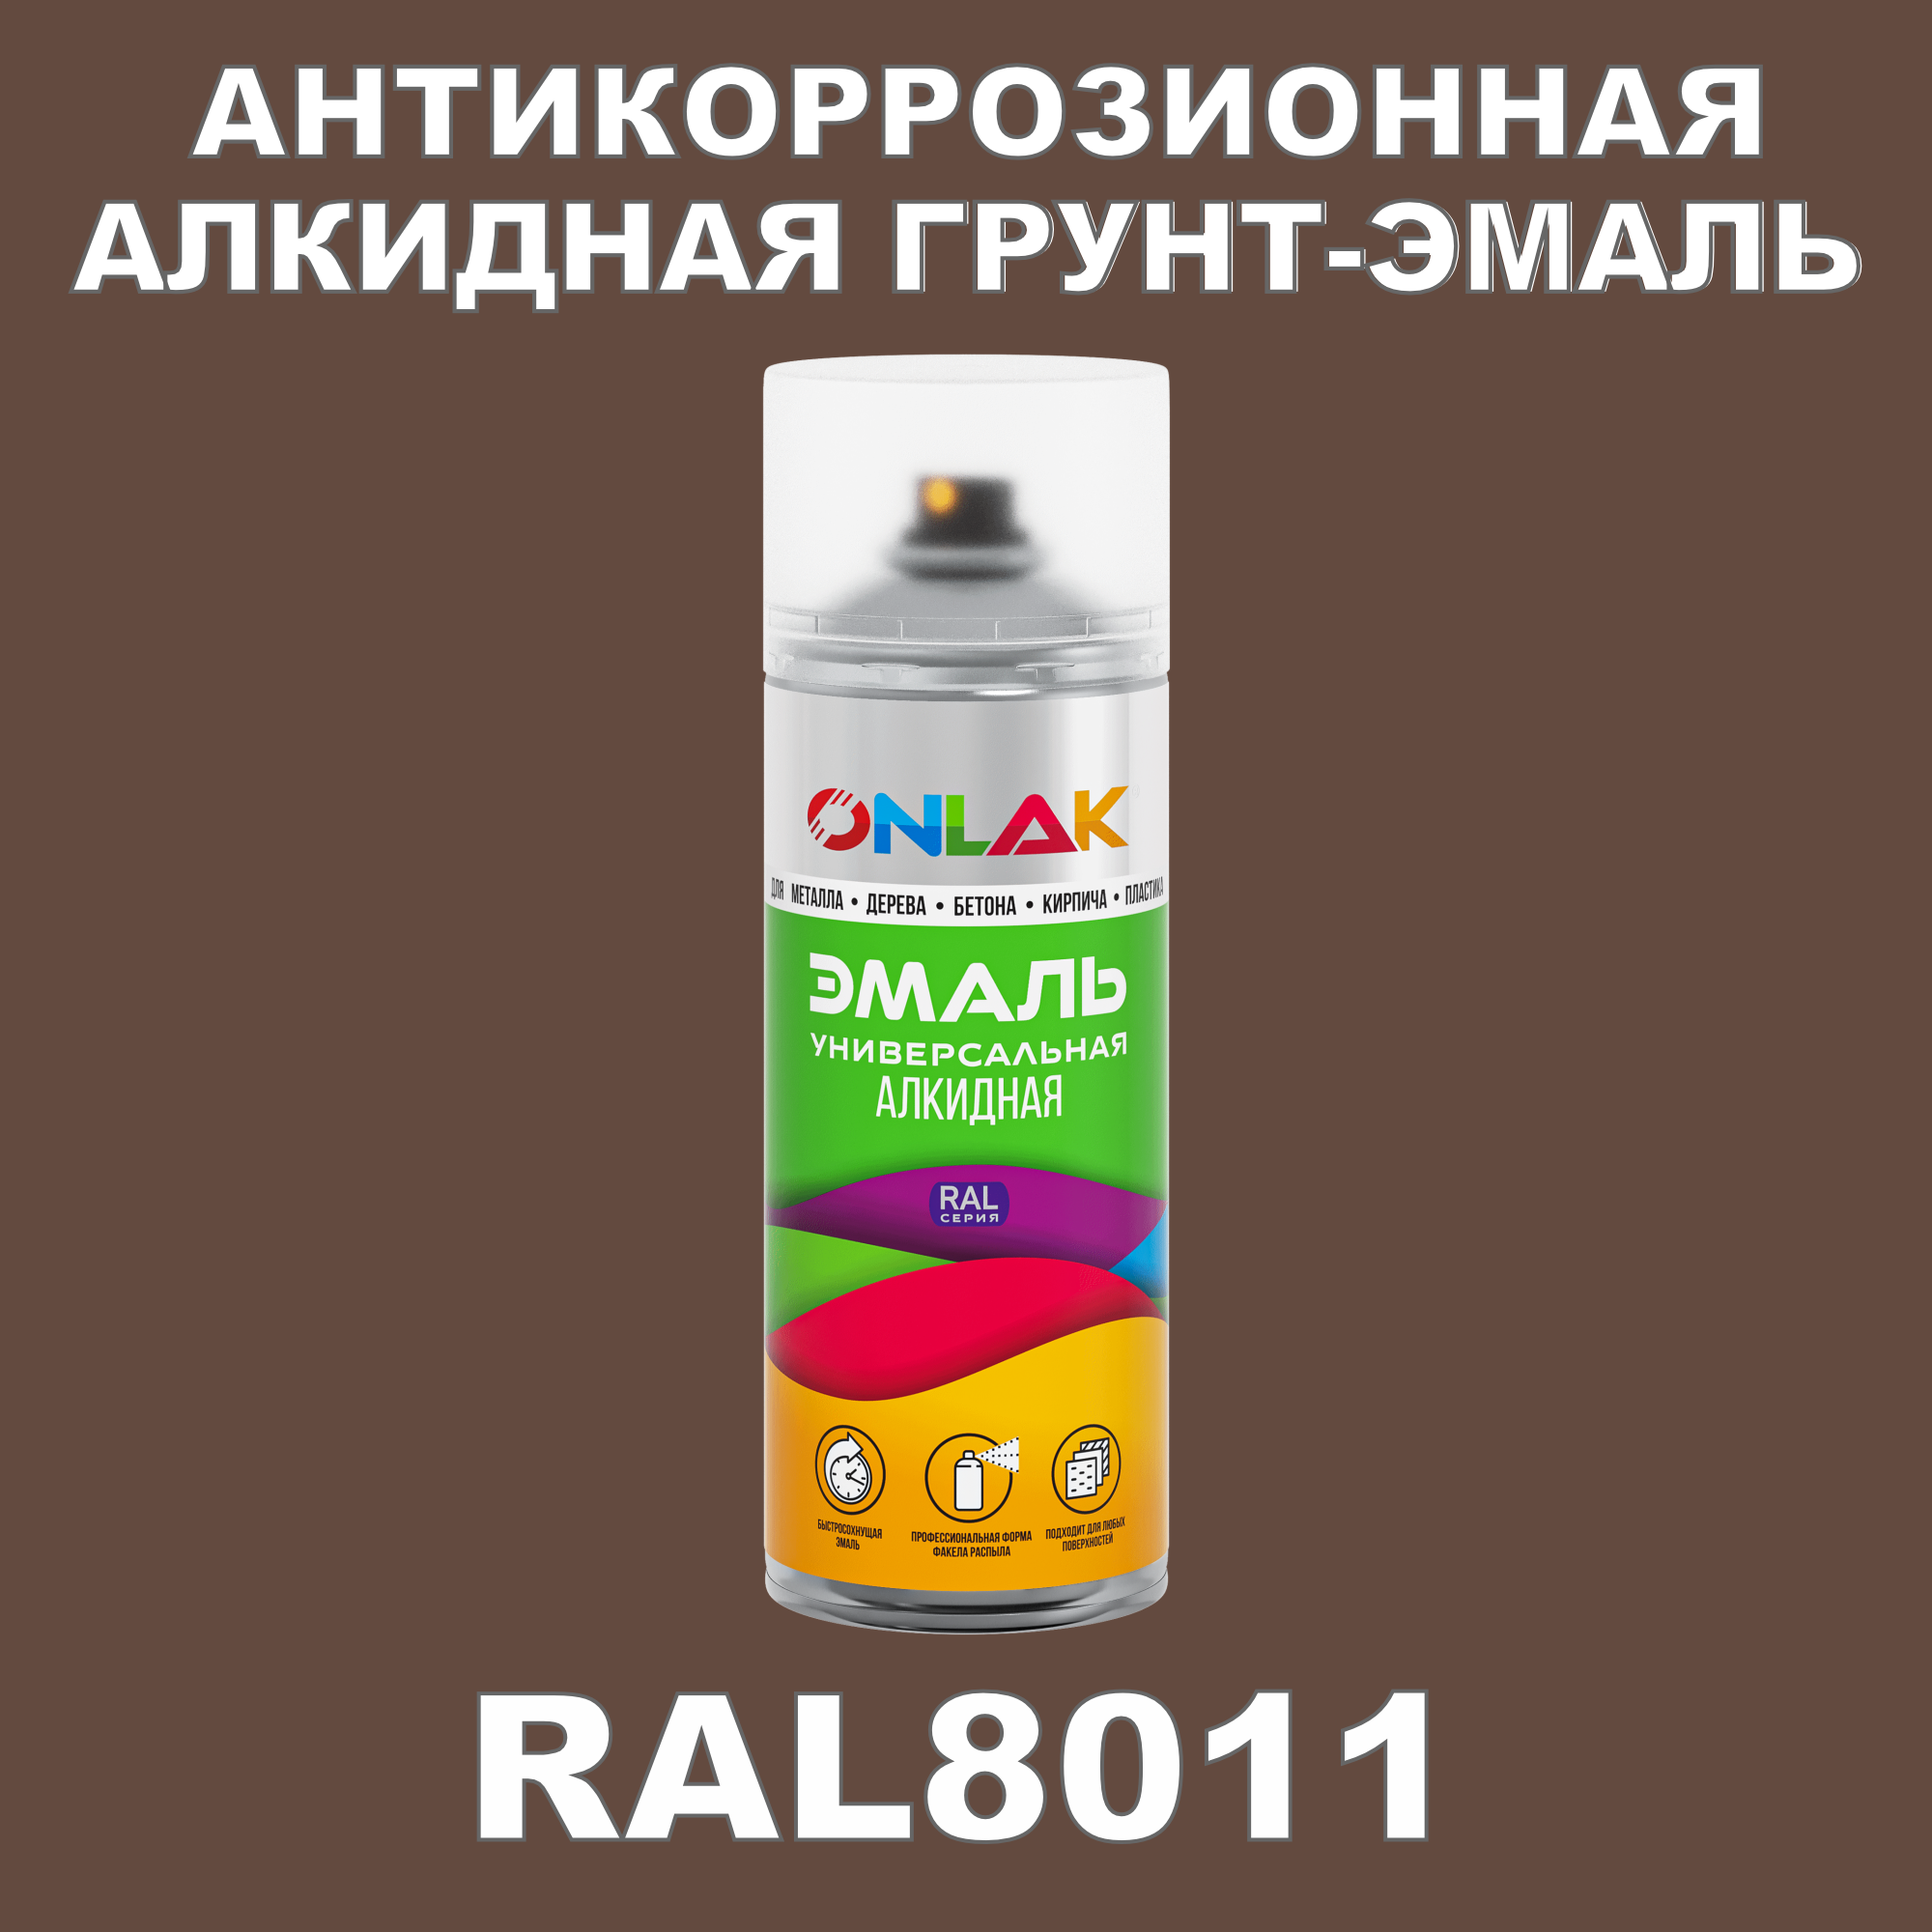 Антикоррозионная грунт-эмаль ONLAK RAL8011 полуматовая для металла и защиты от ржавчины